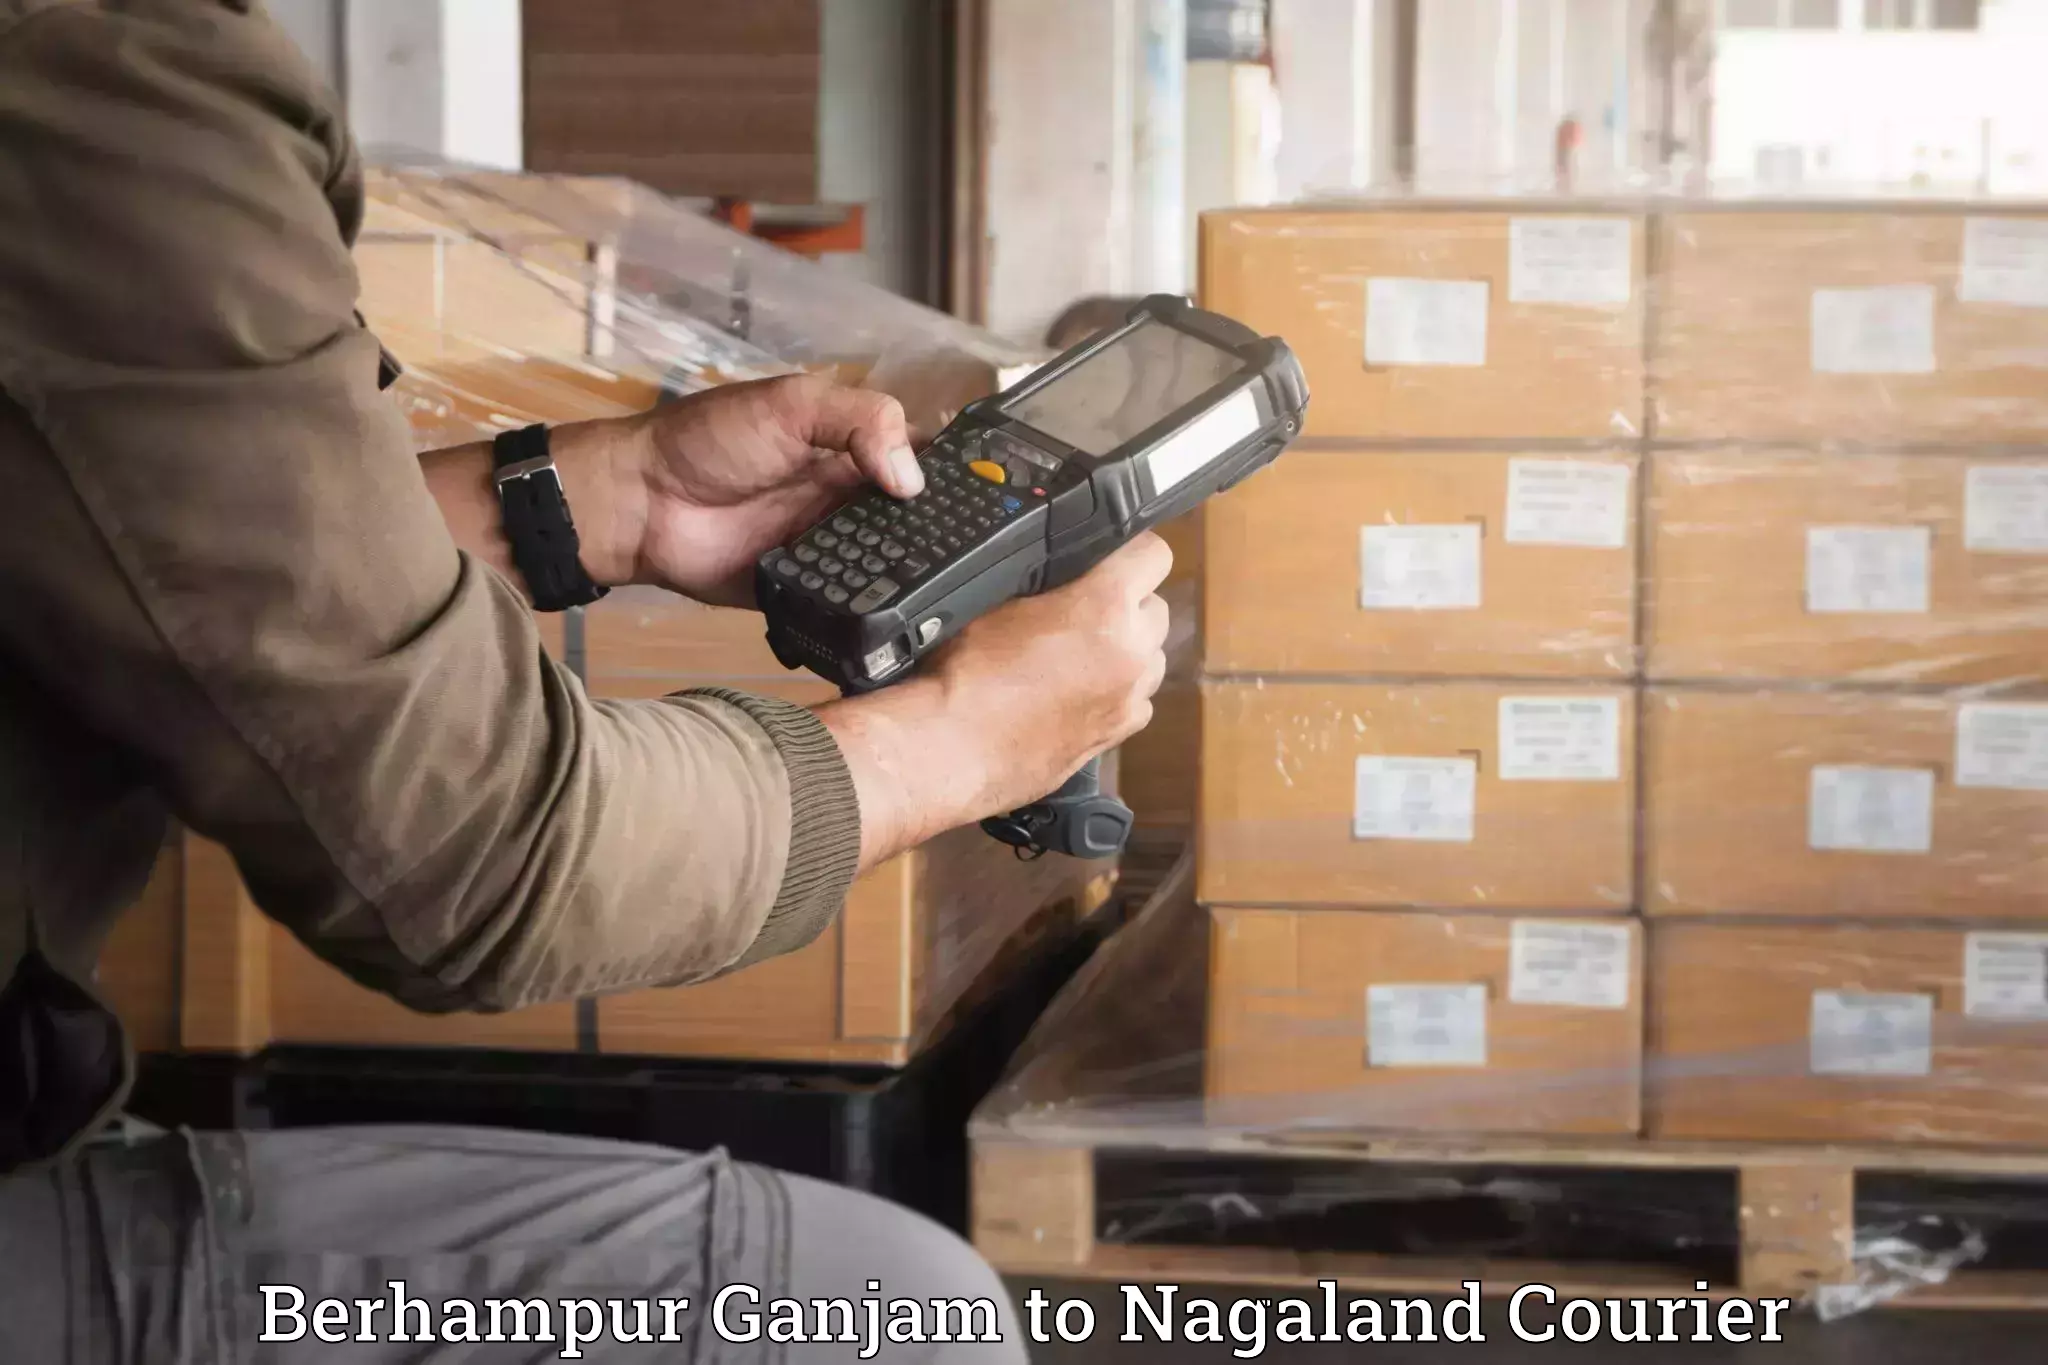 Furniture relocation experts Berhampur Ganjam to Dimapur